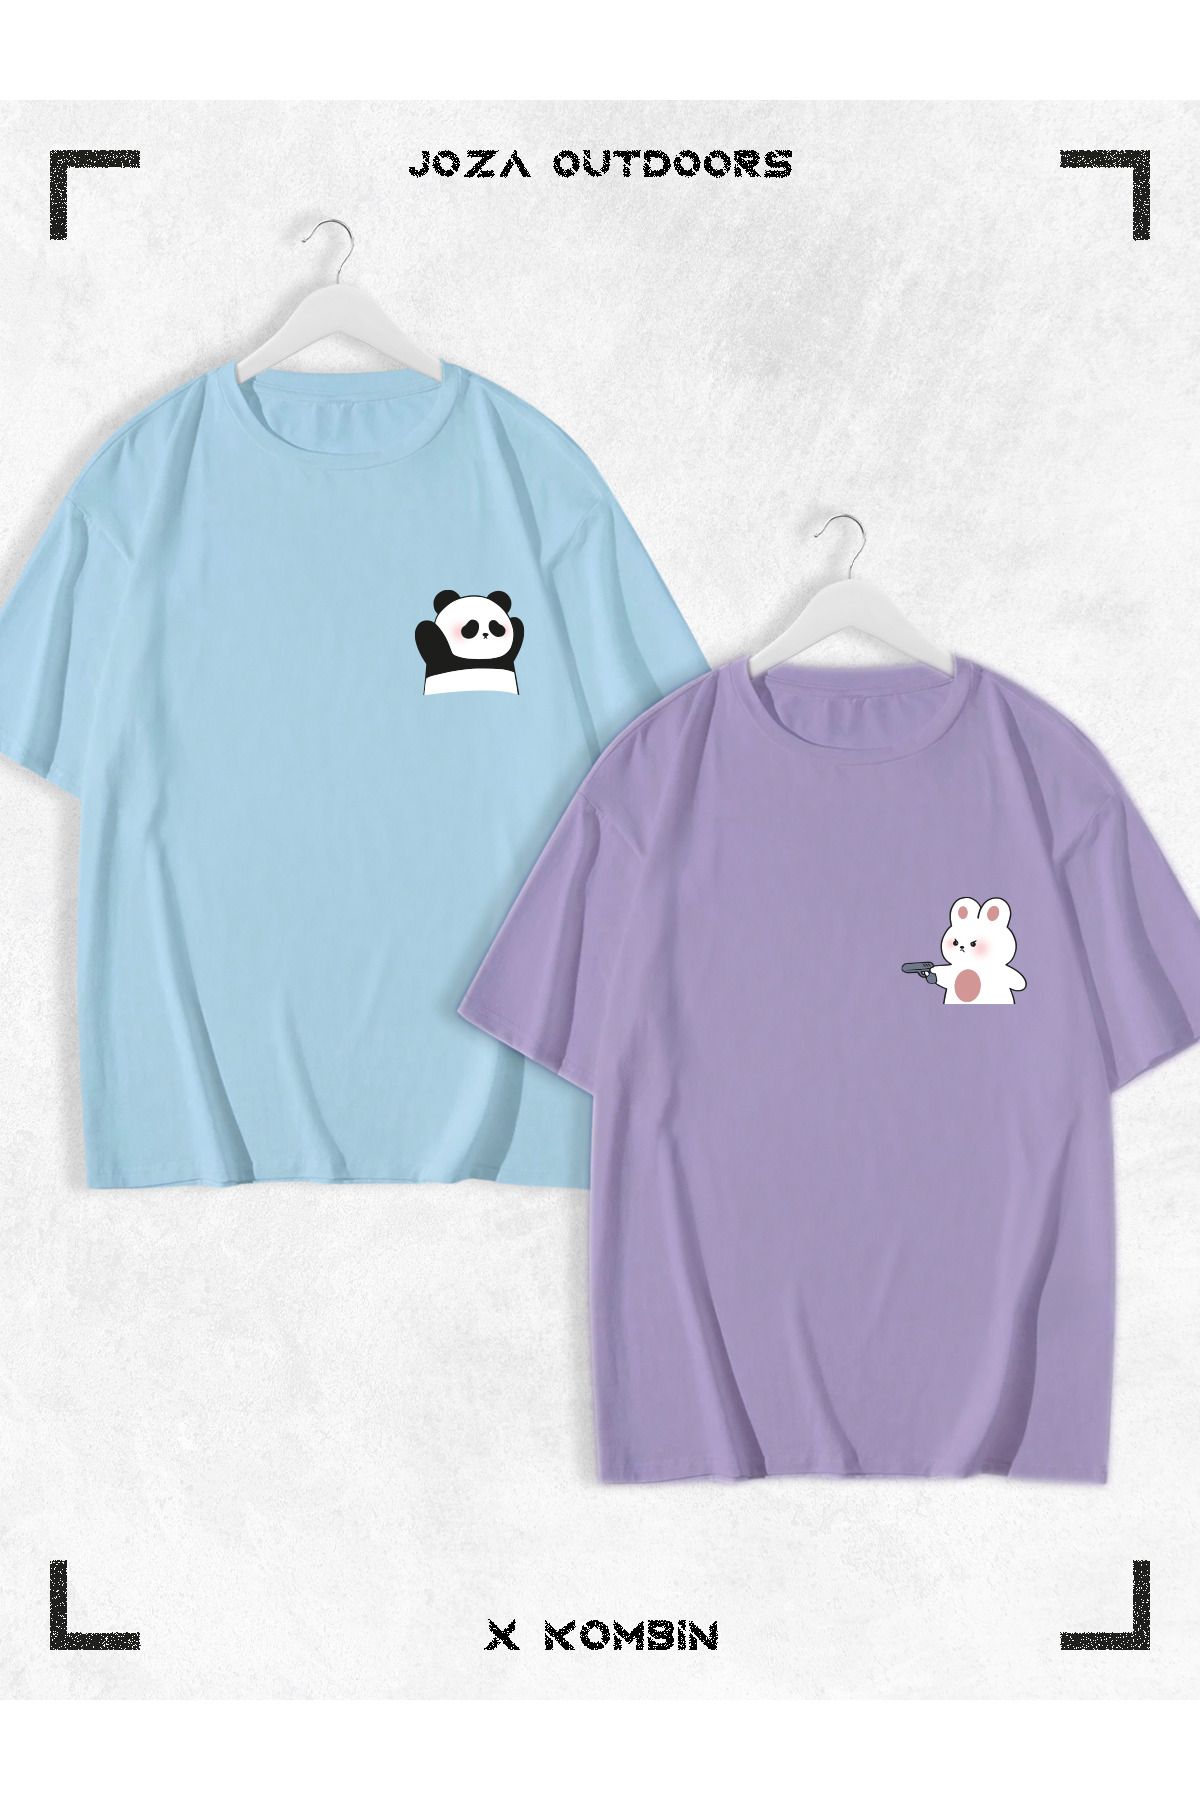 Joza Outdoors Kadın Erkek Unisex Sevimli Ayı Panda Baskılı Sevgili Çift Kombini Oversize Renkli Tshirt 2'li Takım